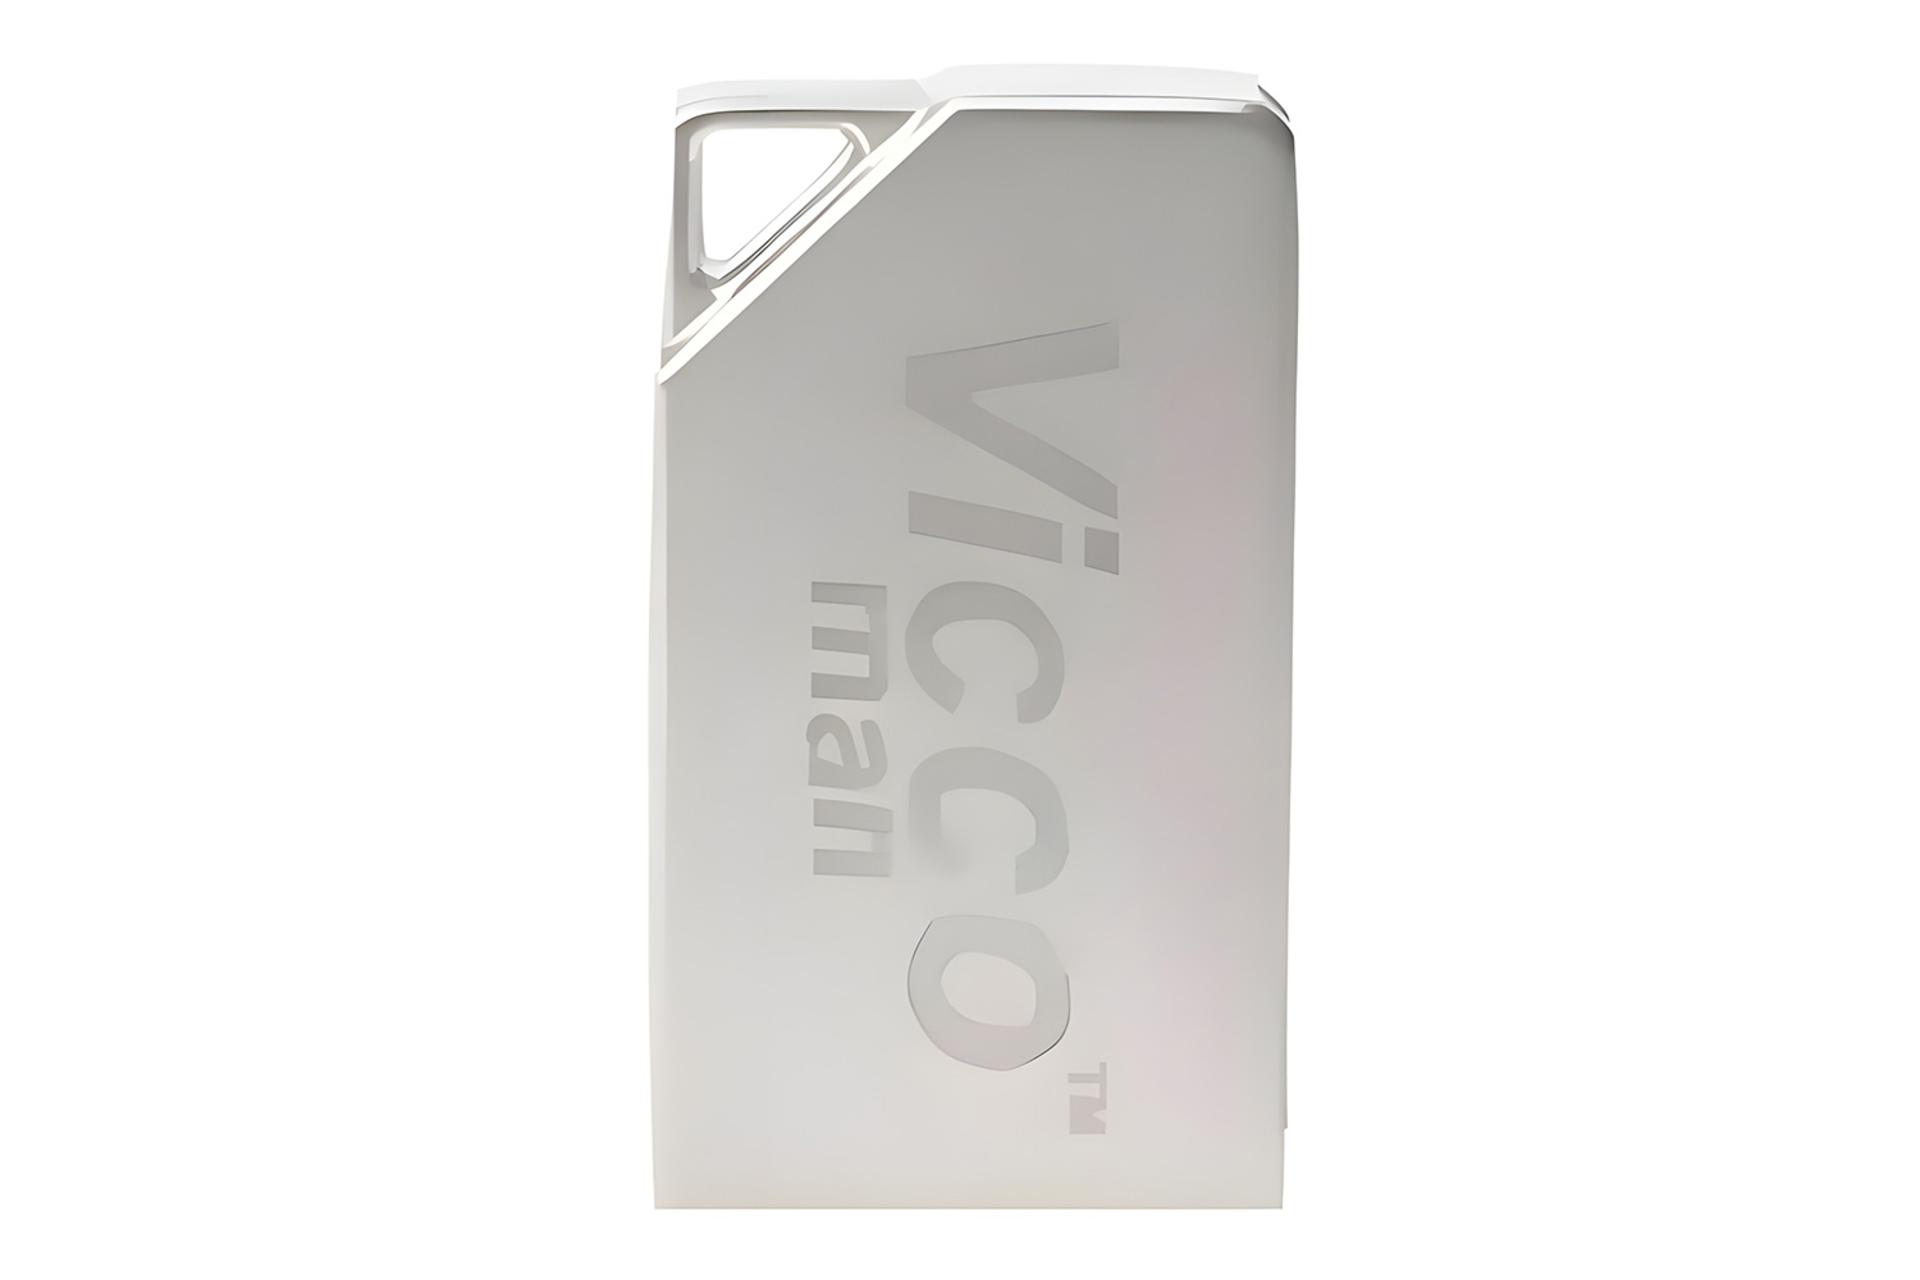 فلش مموری ویکومن Viccoman VC275 G 32GB USB 2.0